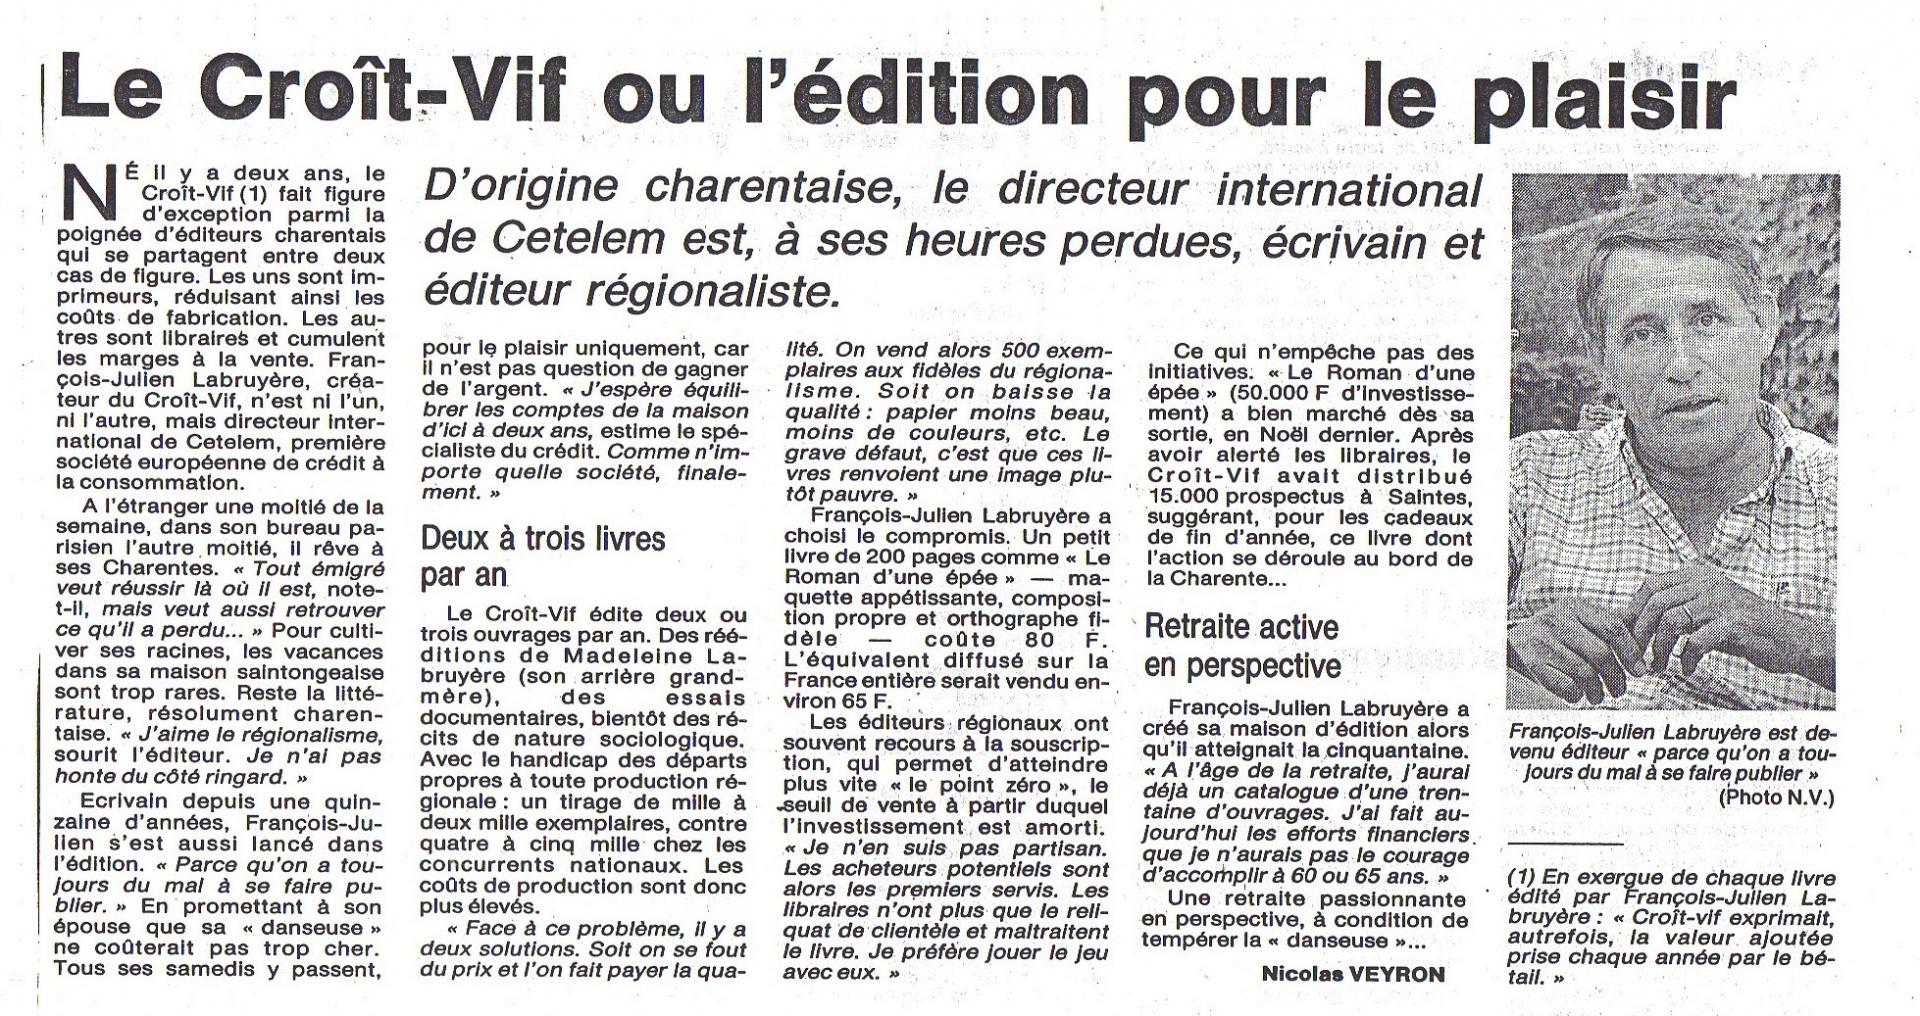 Le croit vif jfl journal touraine 17 aout 1991 blog 1